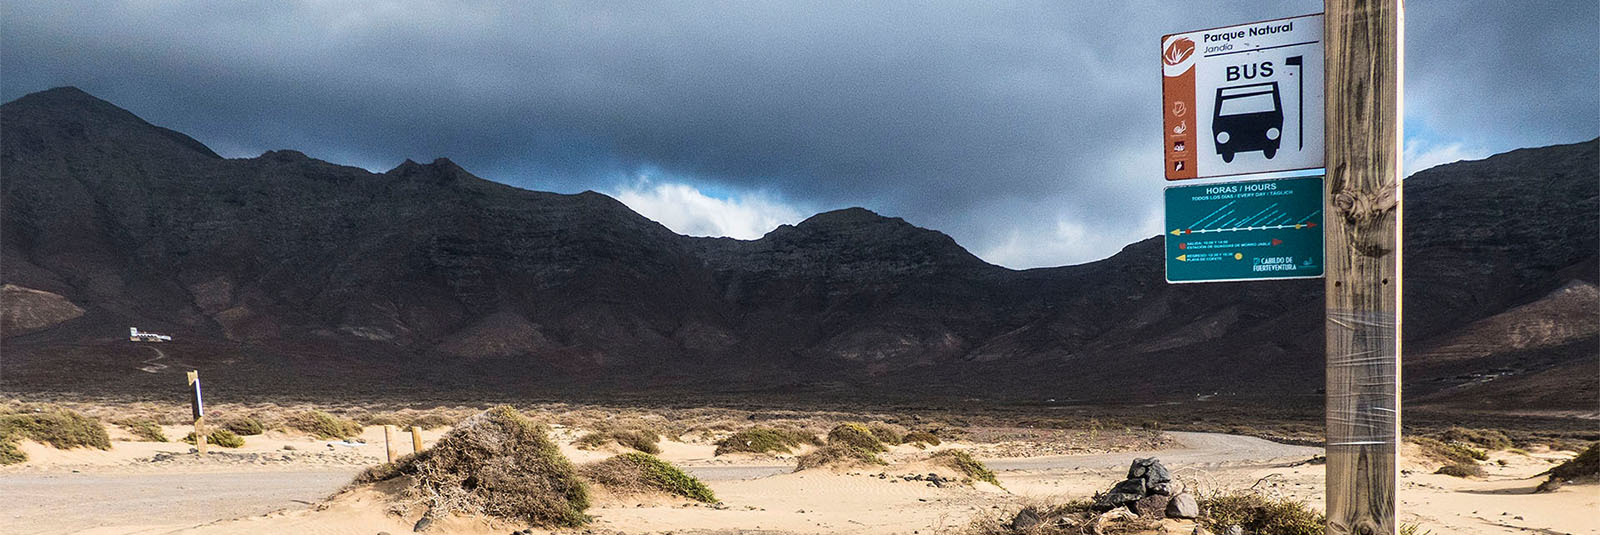 Wandern + Trekking auf Fuerteventura: Durch das Gran Valle nach Cofete.